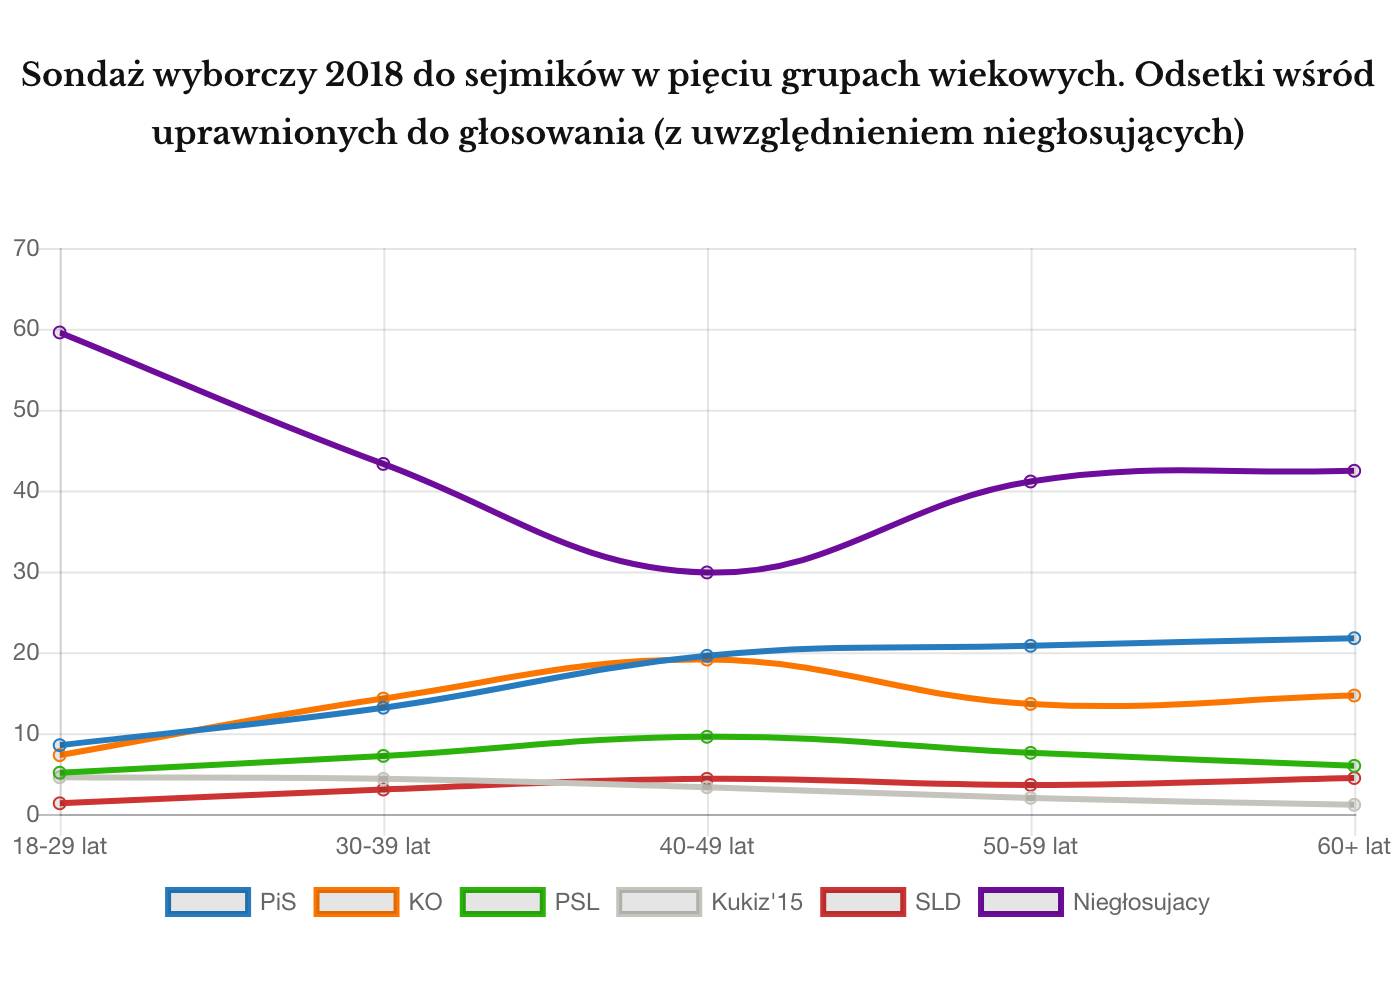 Wyniki wyborów samorządowych 2018 z podziałem na grupy wiekowe z uwzględnieniem niegłosujących